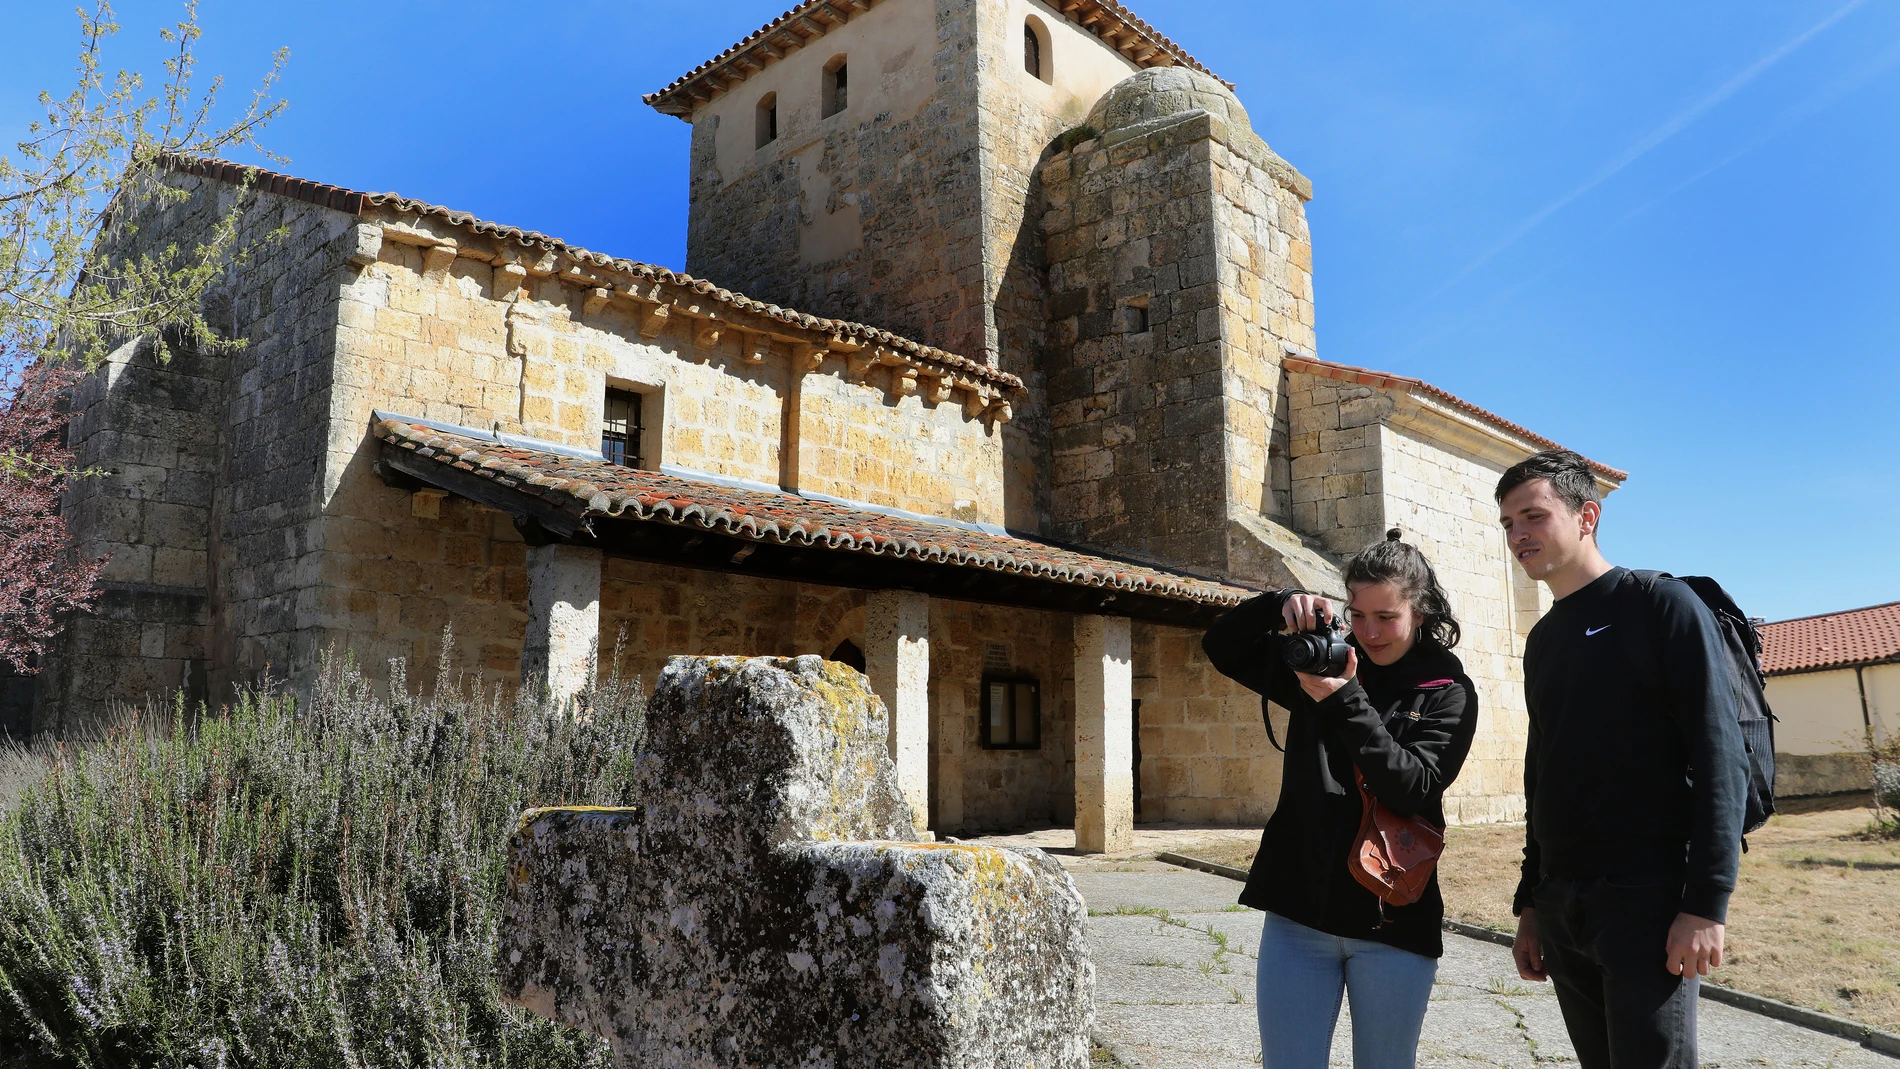  Los jóvenes Laura Estébanez y Emilio Negro, cámara en mano retratan el medio rural y lo cuelgan en las redes sociales, en la imagen caminan por Villajimena (Palencia)